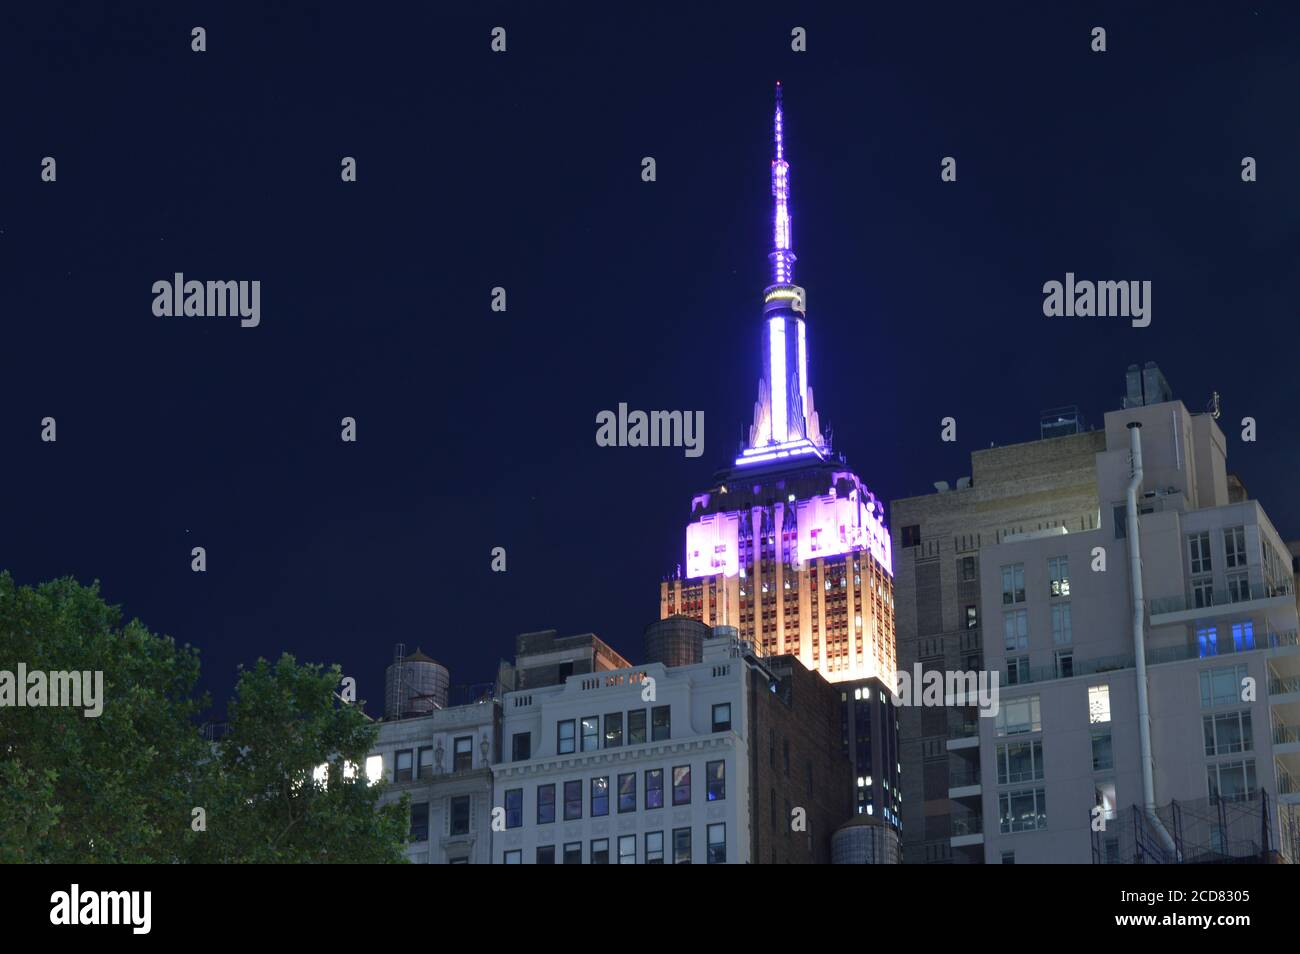 L’Empire state Building di New York City è stato illuminato di viola in onore del centenario del suffragio nella Giornata dell’uguaglianza delle donne (26 agosto 2020). Foto Stock